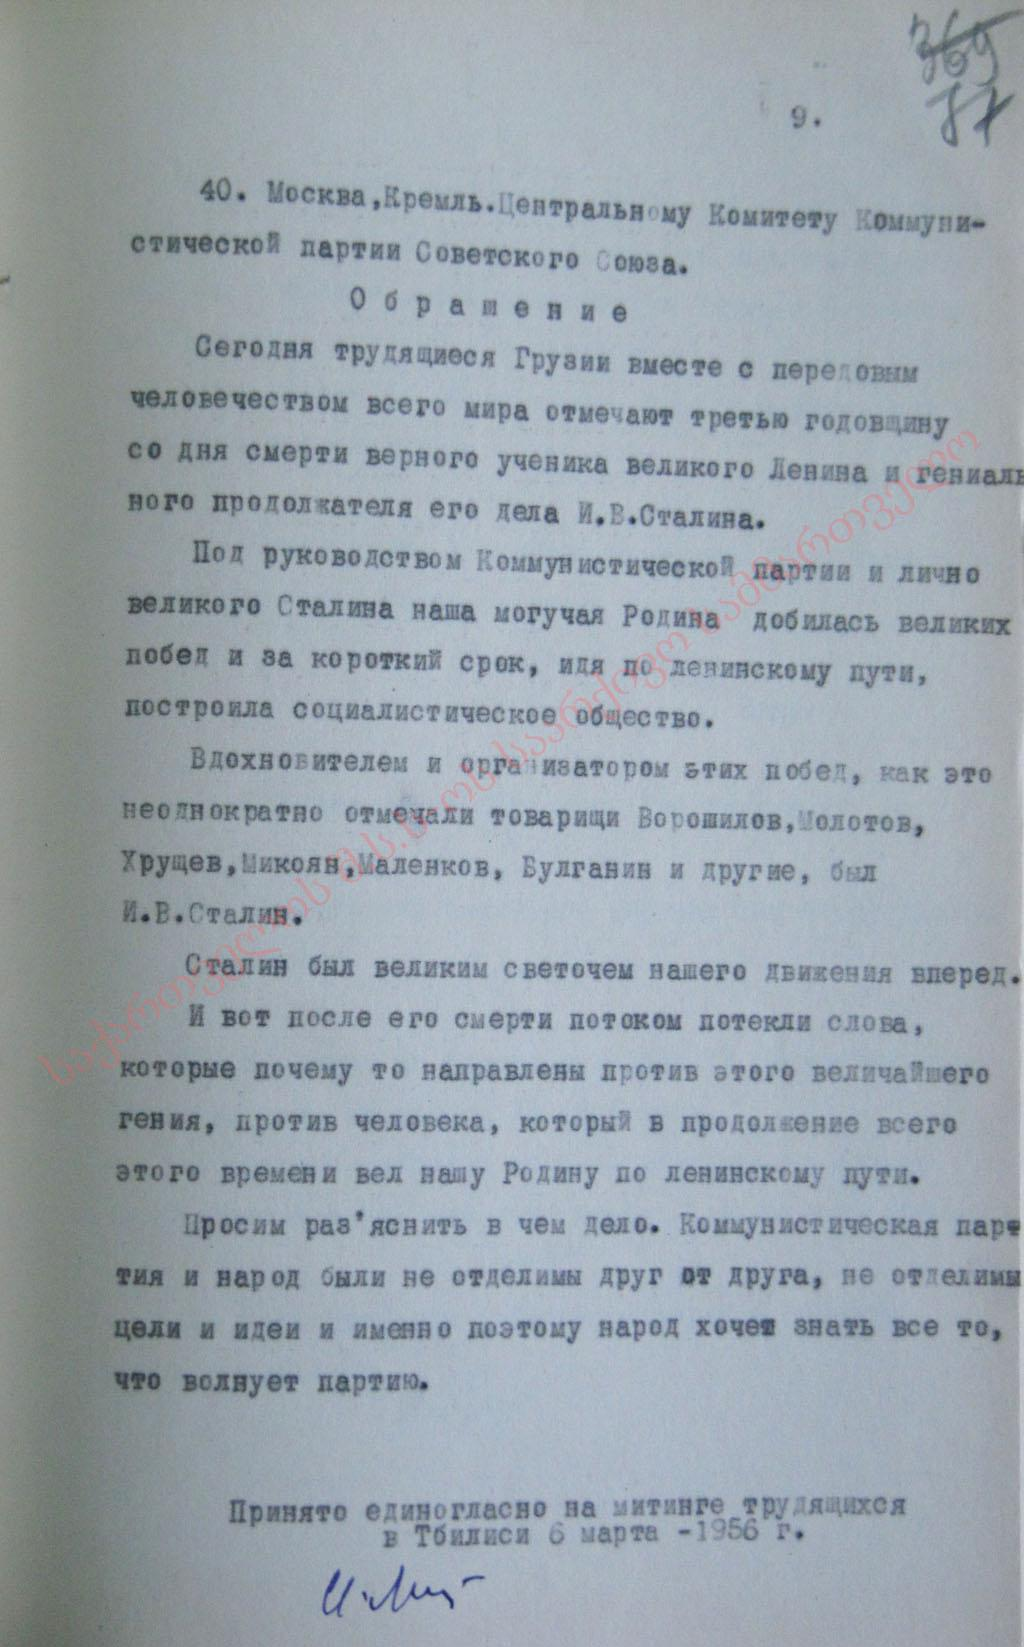 Обрашение участников тбилиского городского митинга в ЦК КПСС от 6 марта 1956 г.